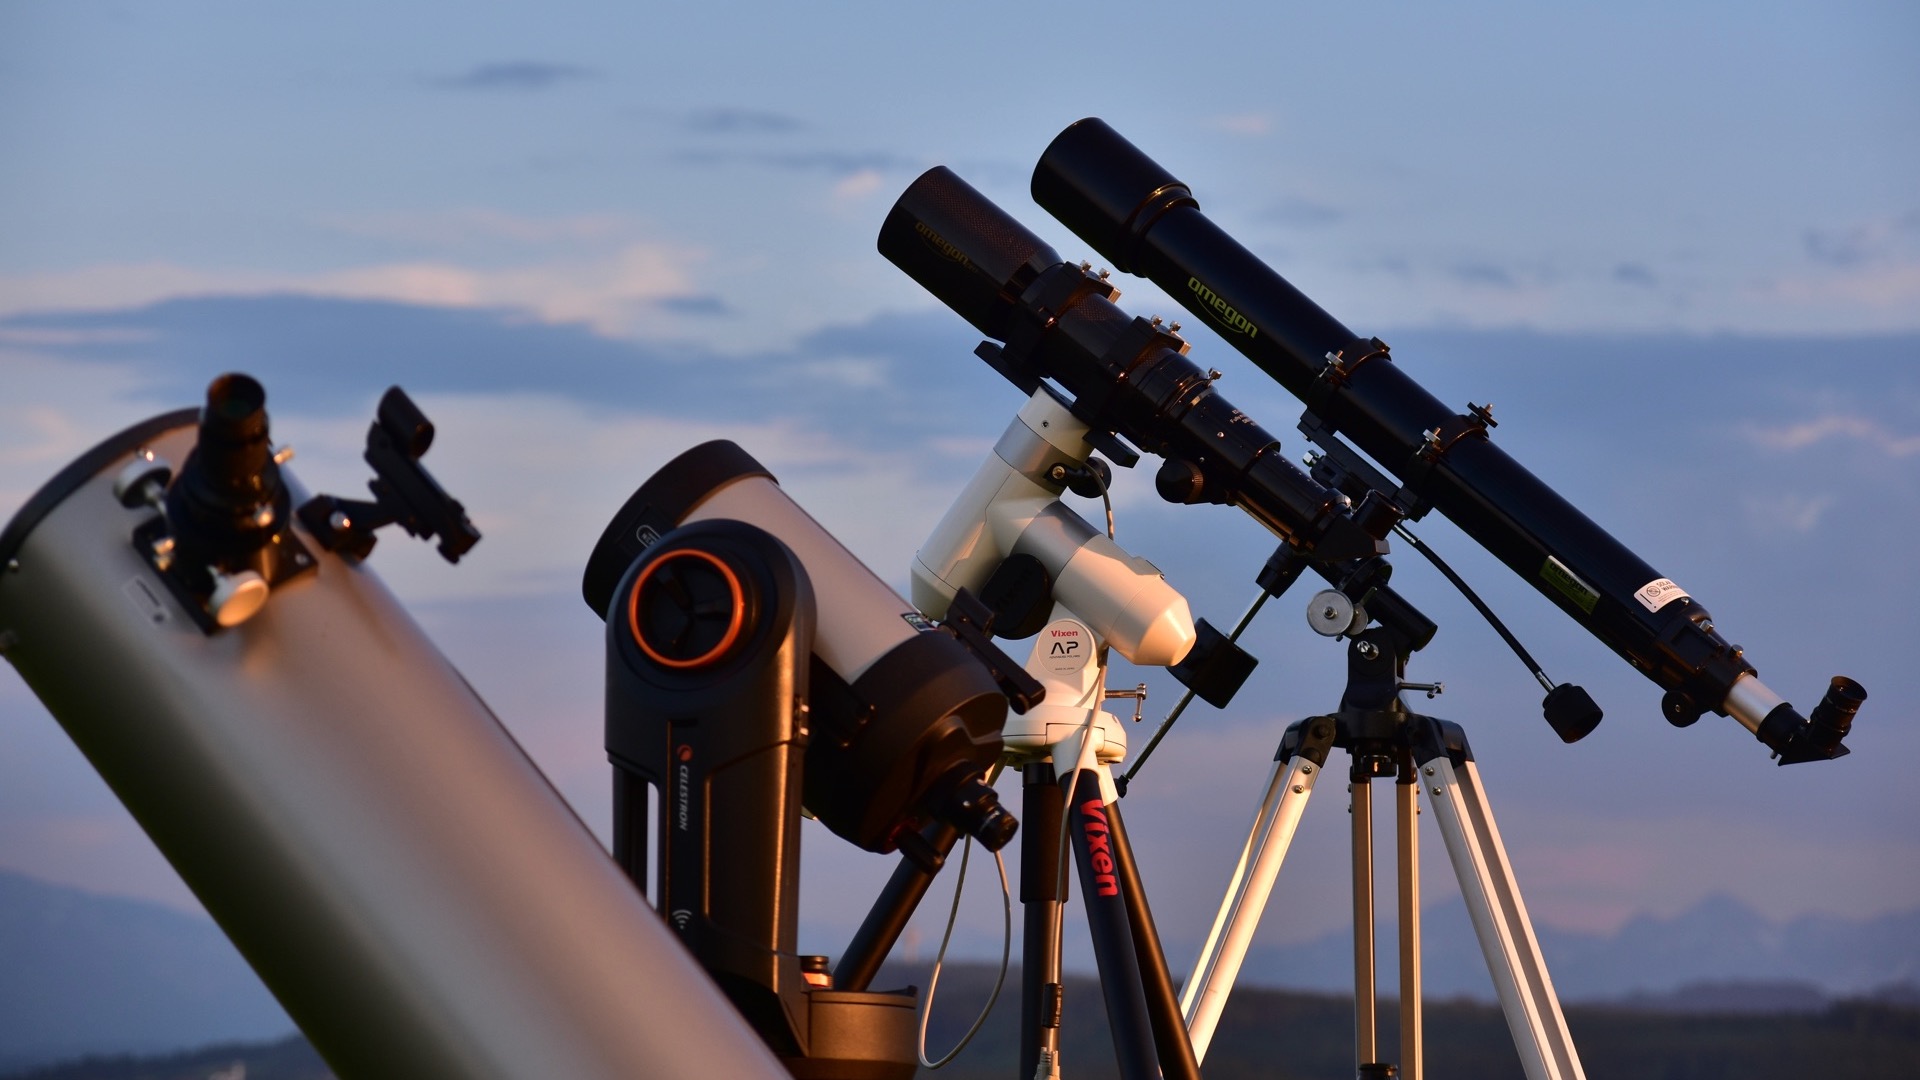 Beginners in de sterrenkunde worden geconfronteerd met een onoverzichtelijke keuze aan telescopen. Deskundigen kunnen hier snel helderheid in brengen.